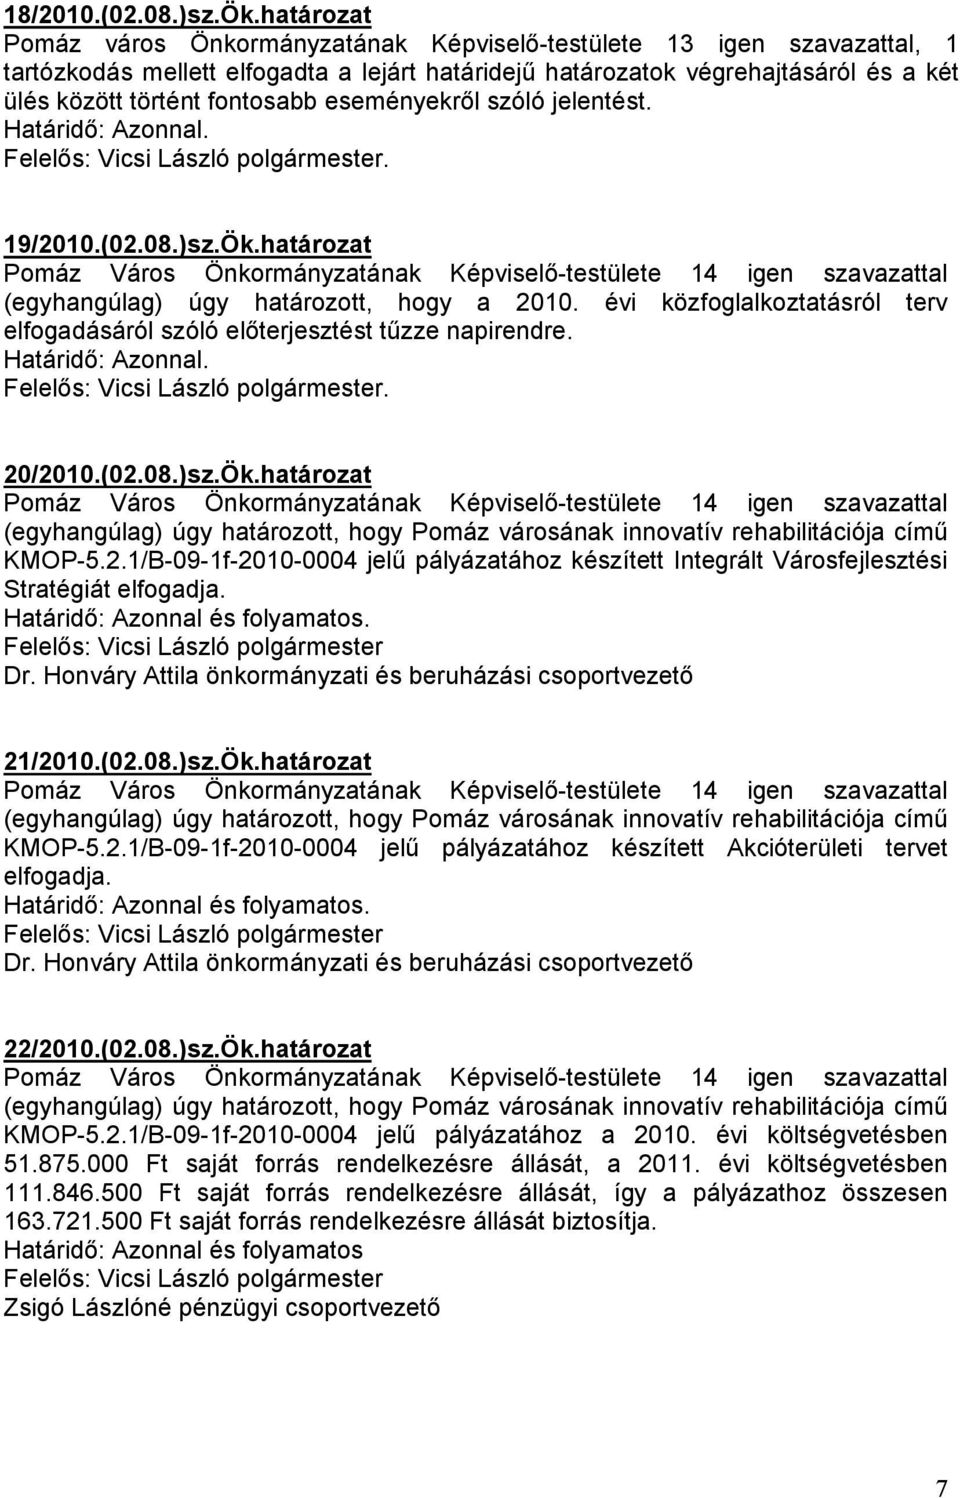 eseményekrıl szóló jelentést.. 19/2010.(02.08.)sz.Ök.határozat Pomáz Város Önkormányzatának Képviselı-testülete 14 igen szavazattal (egyhangúlag) úgy határozott, hogy a 2010.